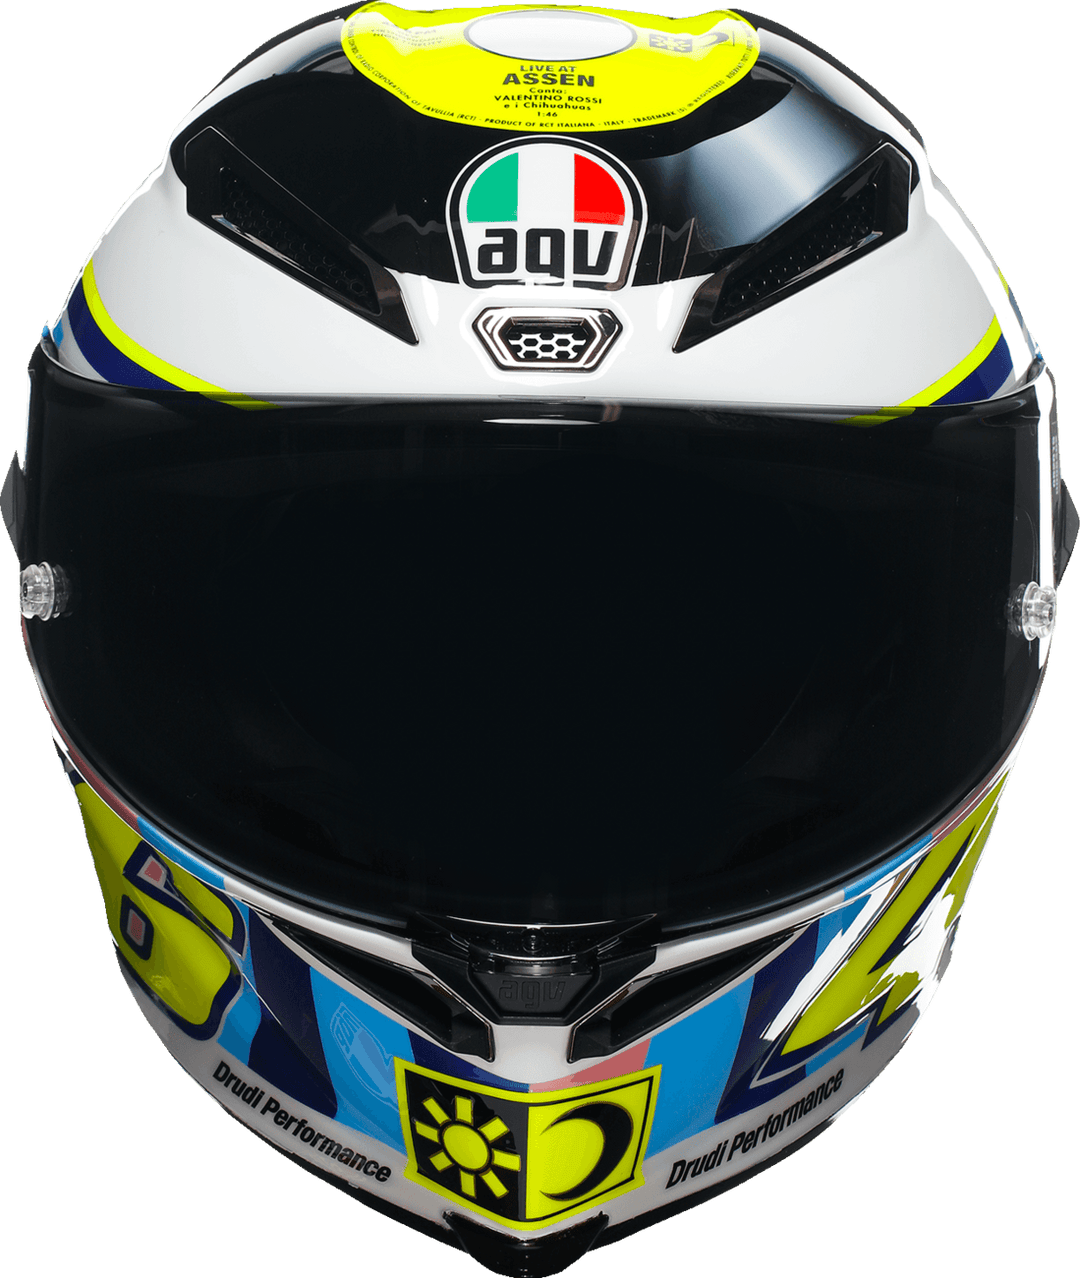 AGV Pista GP RR Assen 2007 Helmet - Motor Psycho Sport